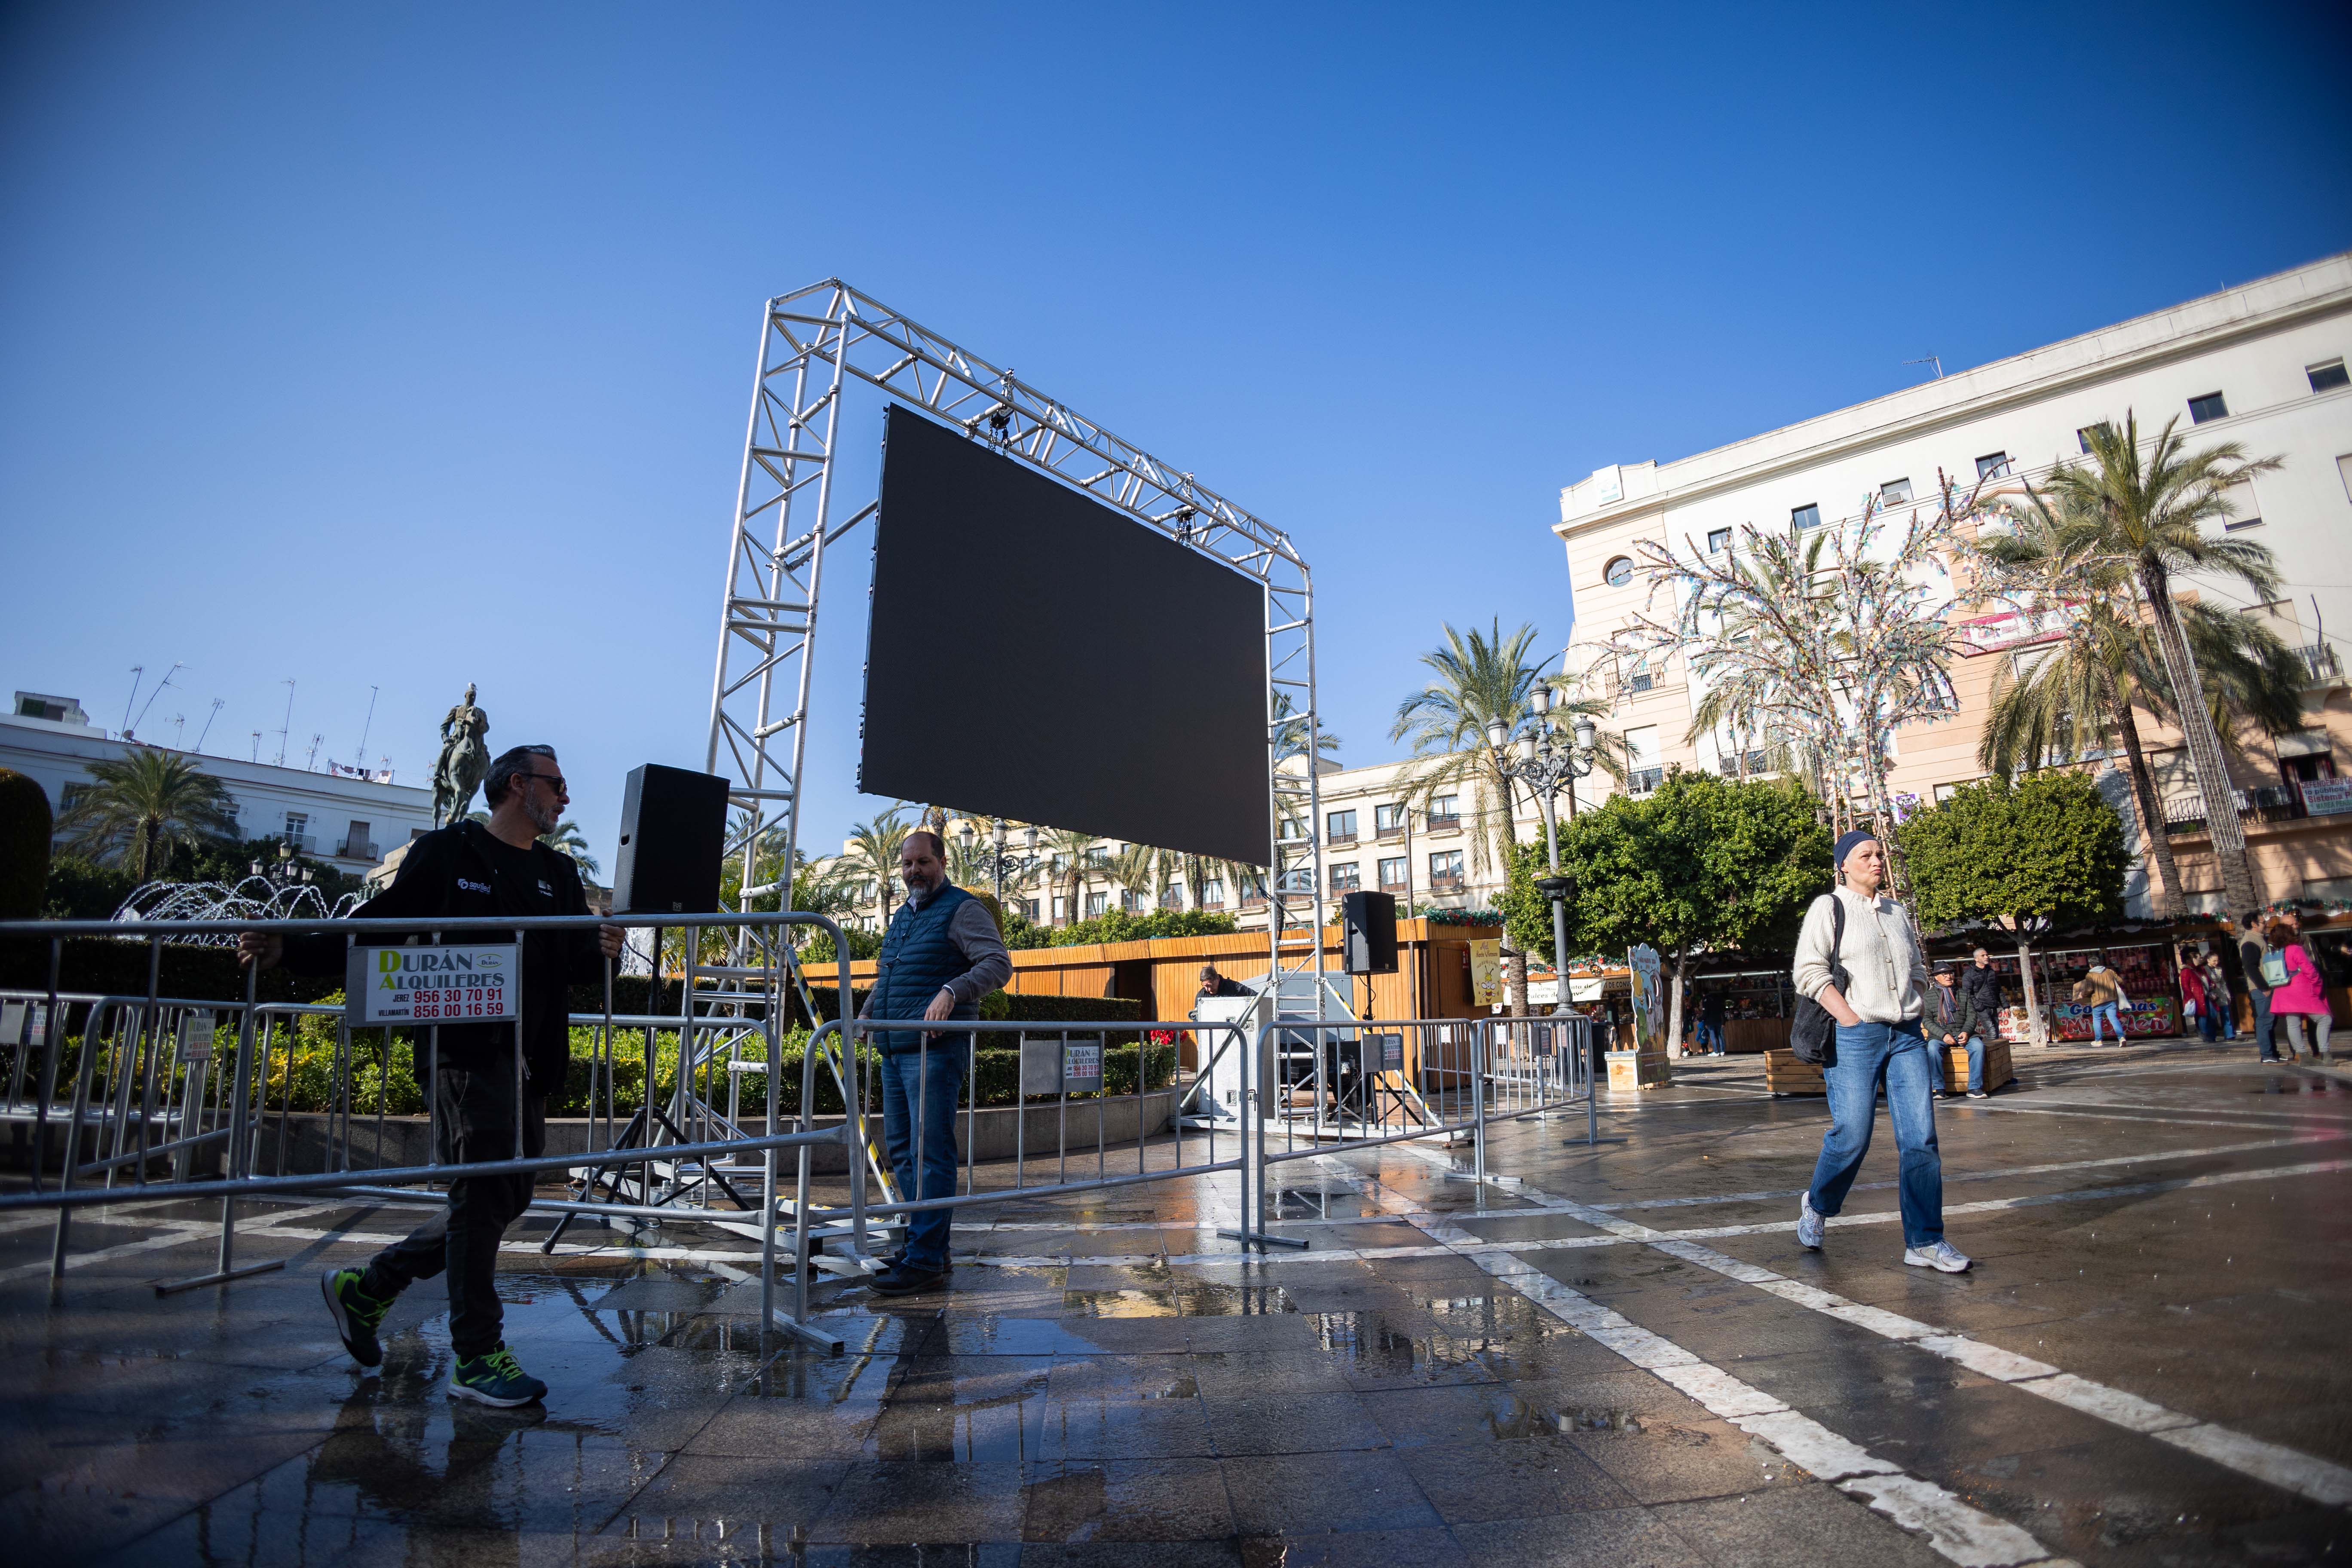 La pantalla gigante que se está preparando en plaza del Arenal con motivo de las campanadas de Canal Sur en Jerez.